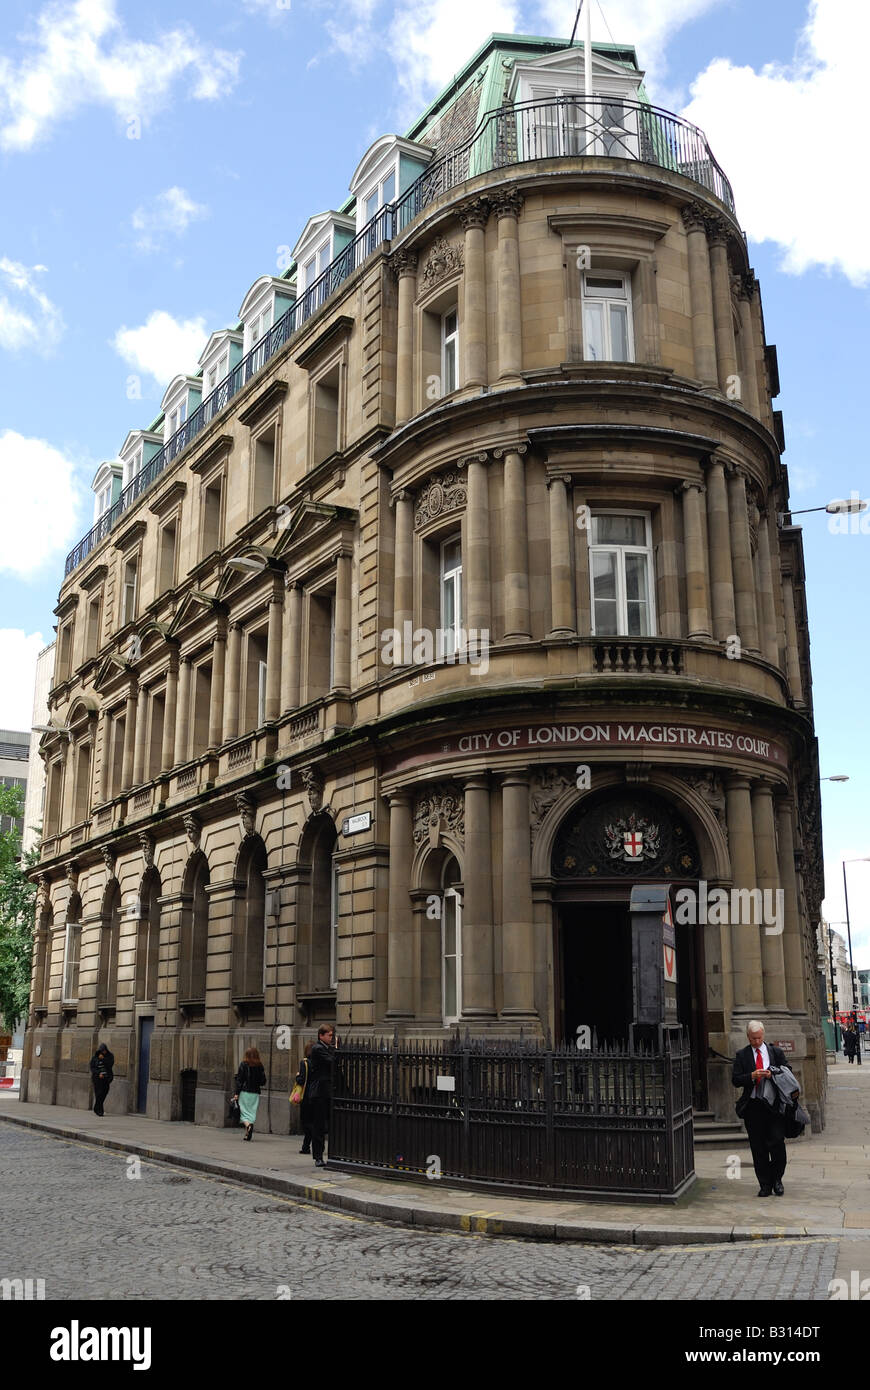 La ville de London Magistrates Court, 1 Queen Victoria Street, London EC4N 4XY Banque D'Images